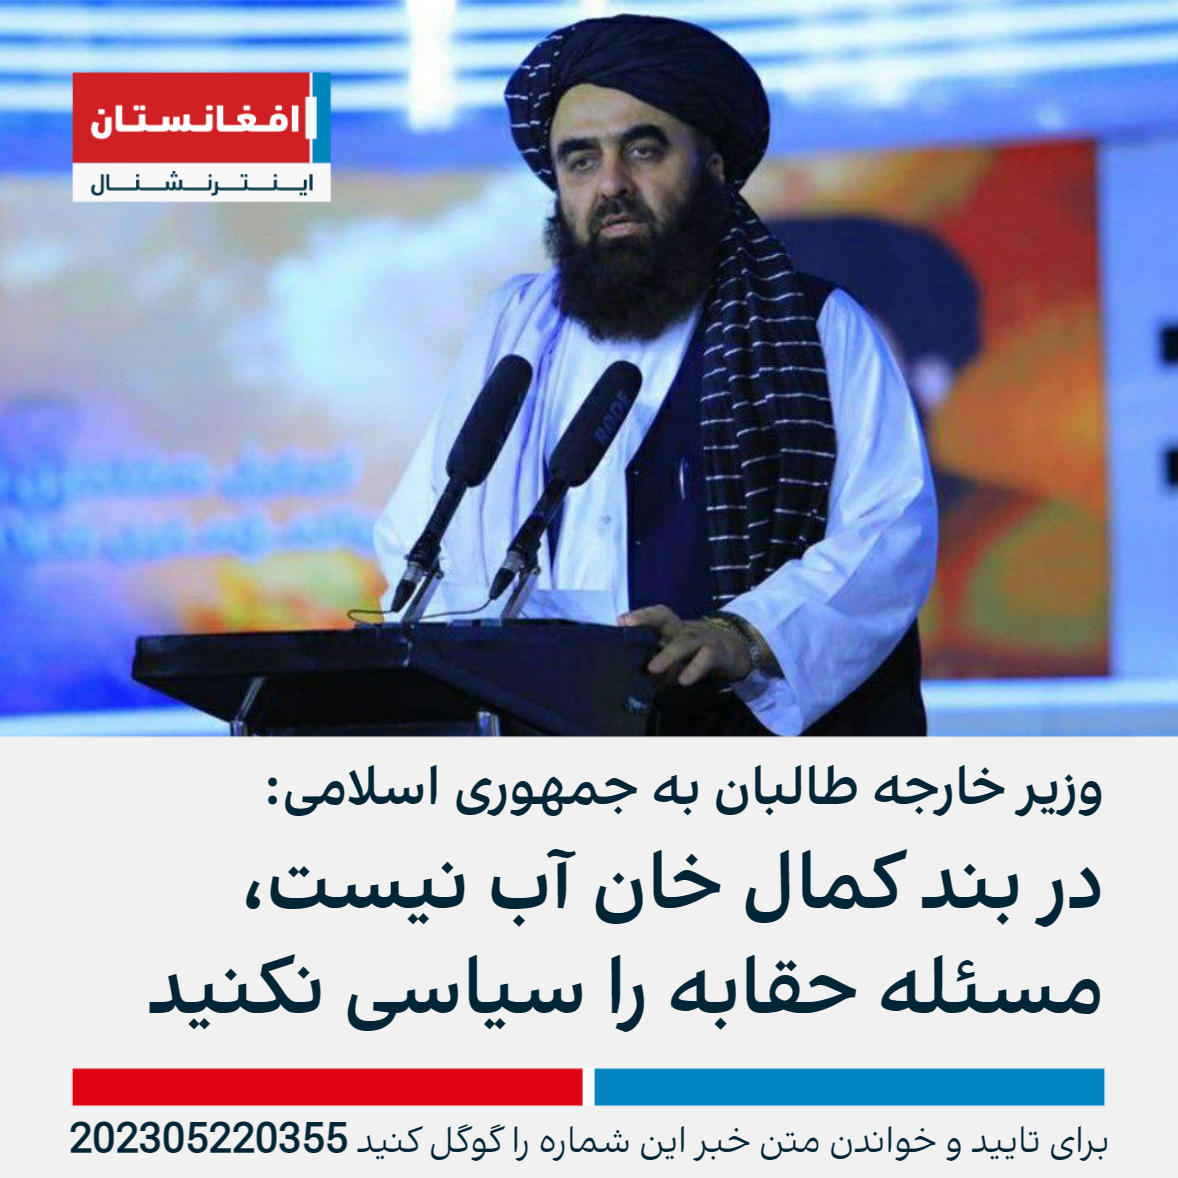 وزیر خارجه طالبان به جمهوری اسلامی در بند کمال خان آب نیست، مسئله حقابه را سیاسی نکنید